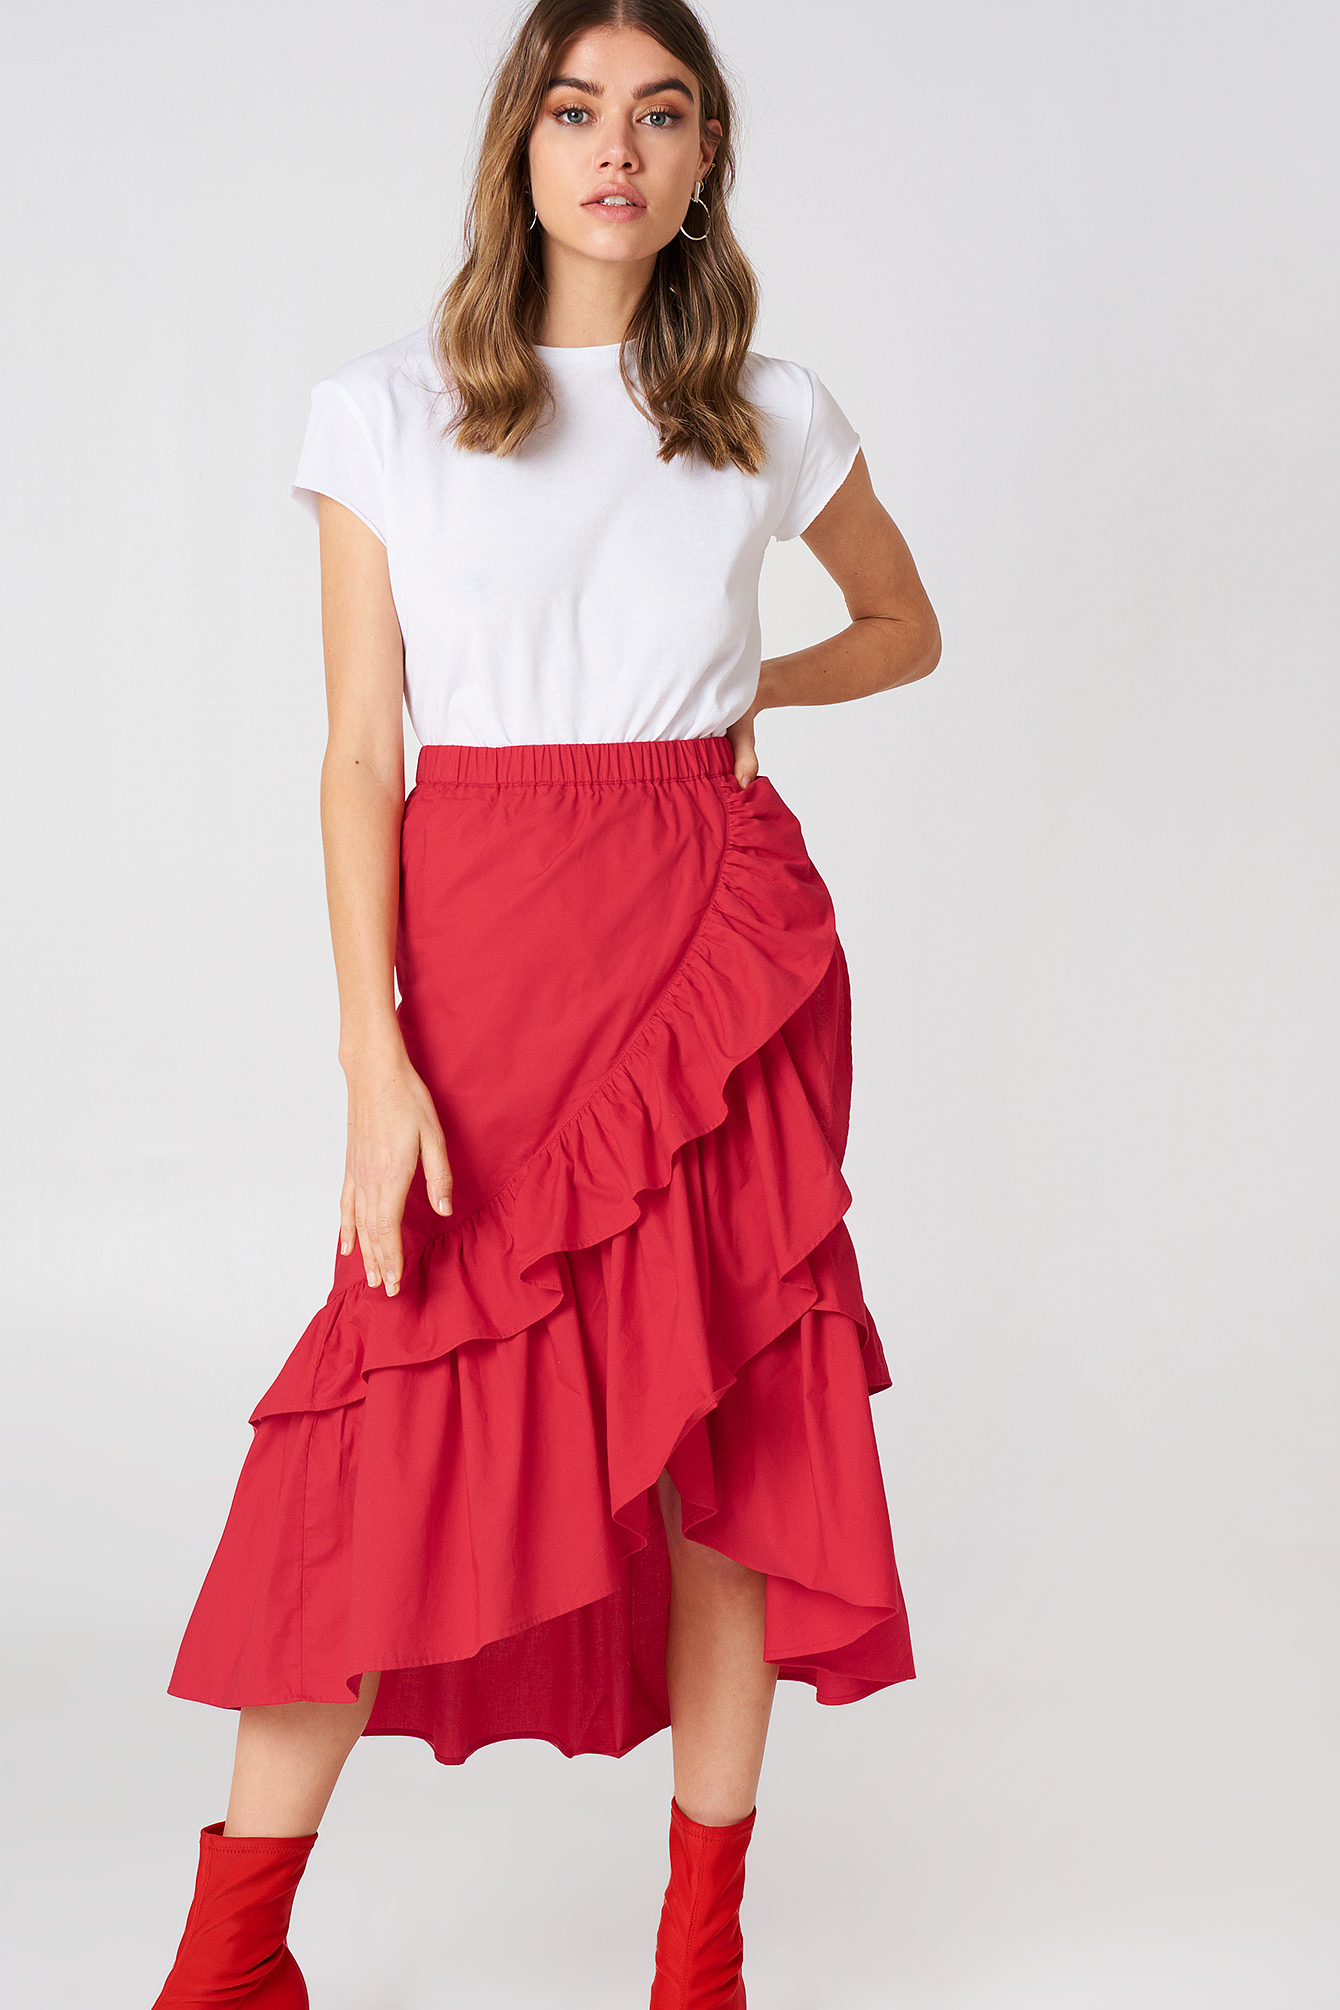 Overlap Maxi Frill Skirt Red | na-kd.com - 1340 x 2010 jpeg 1525kB